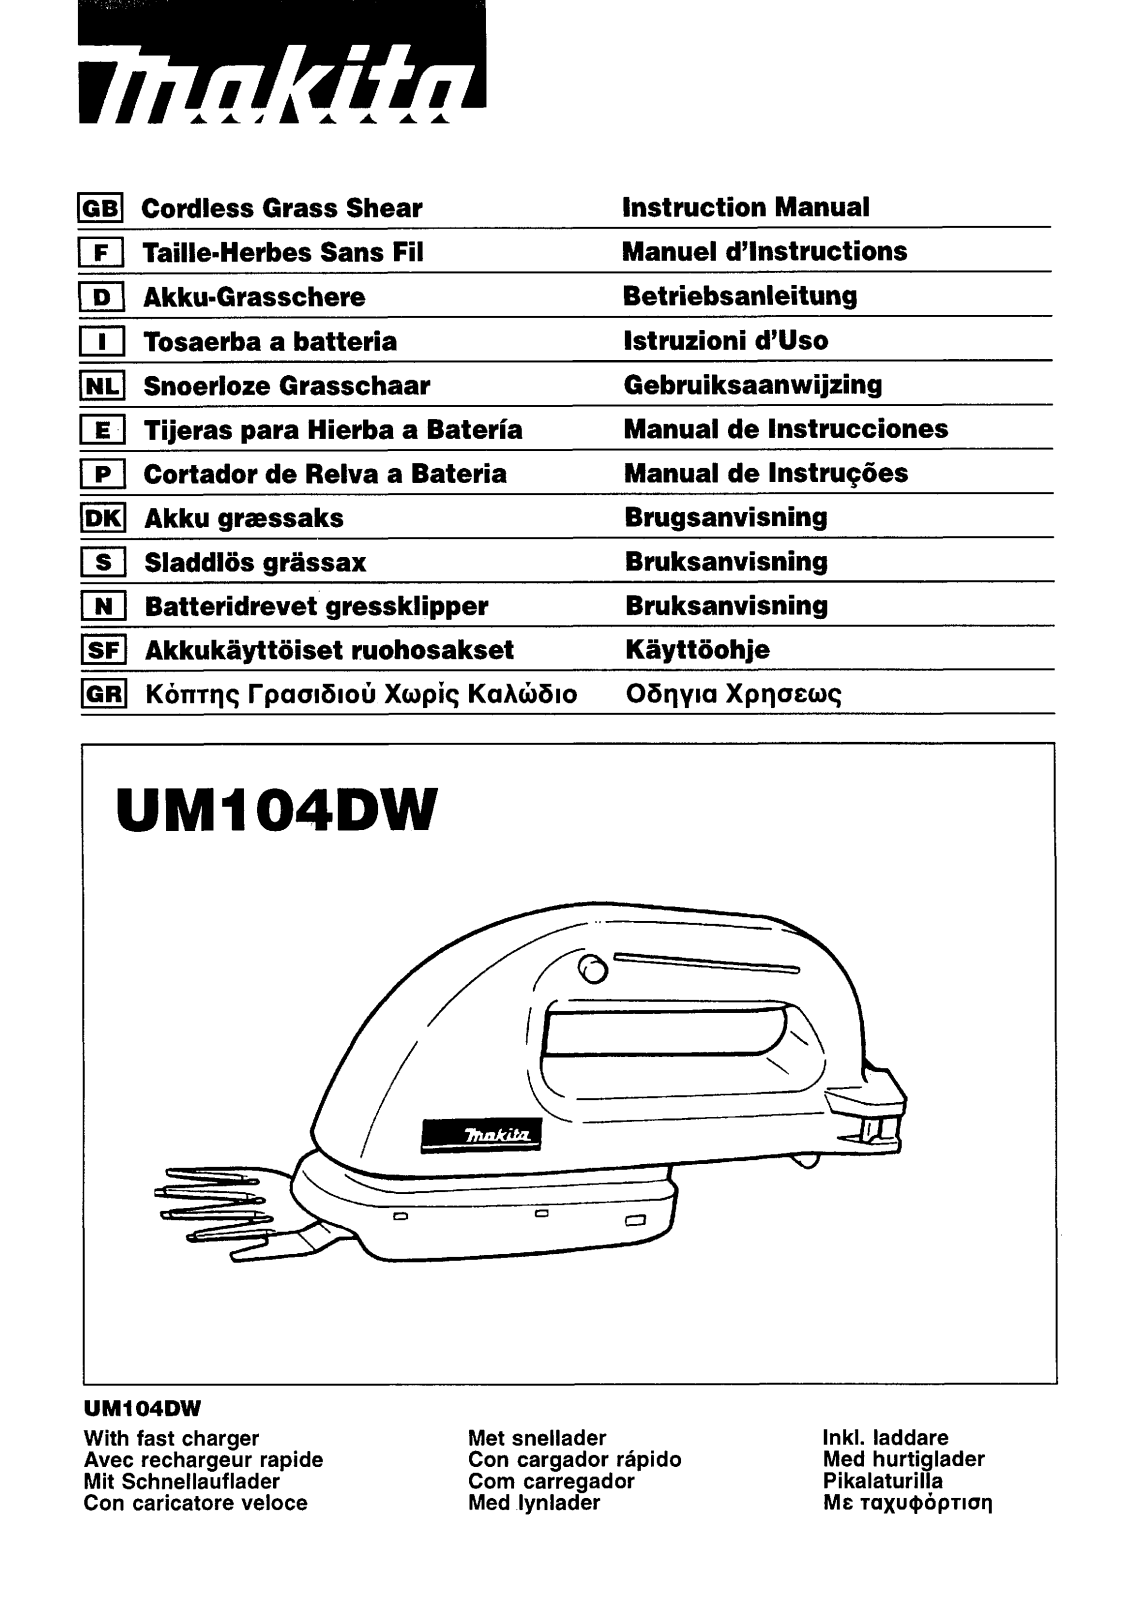 Makita UM104DW Manual